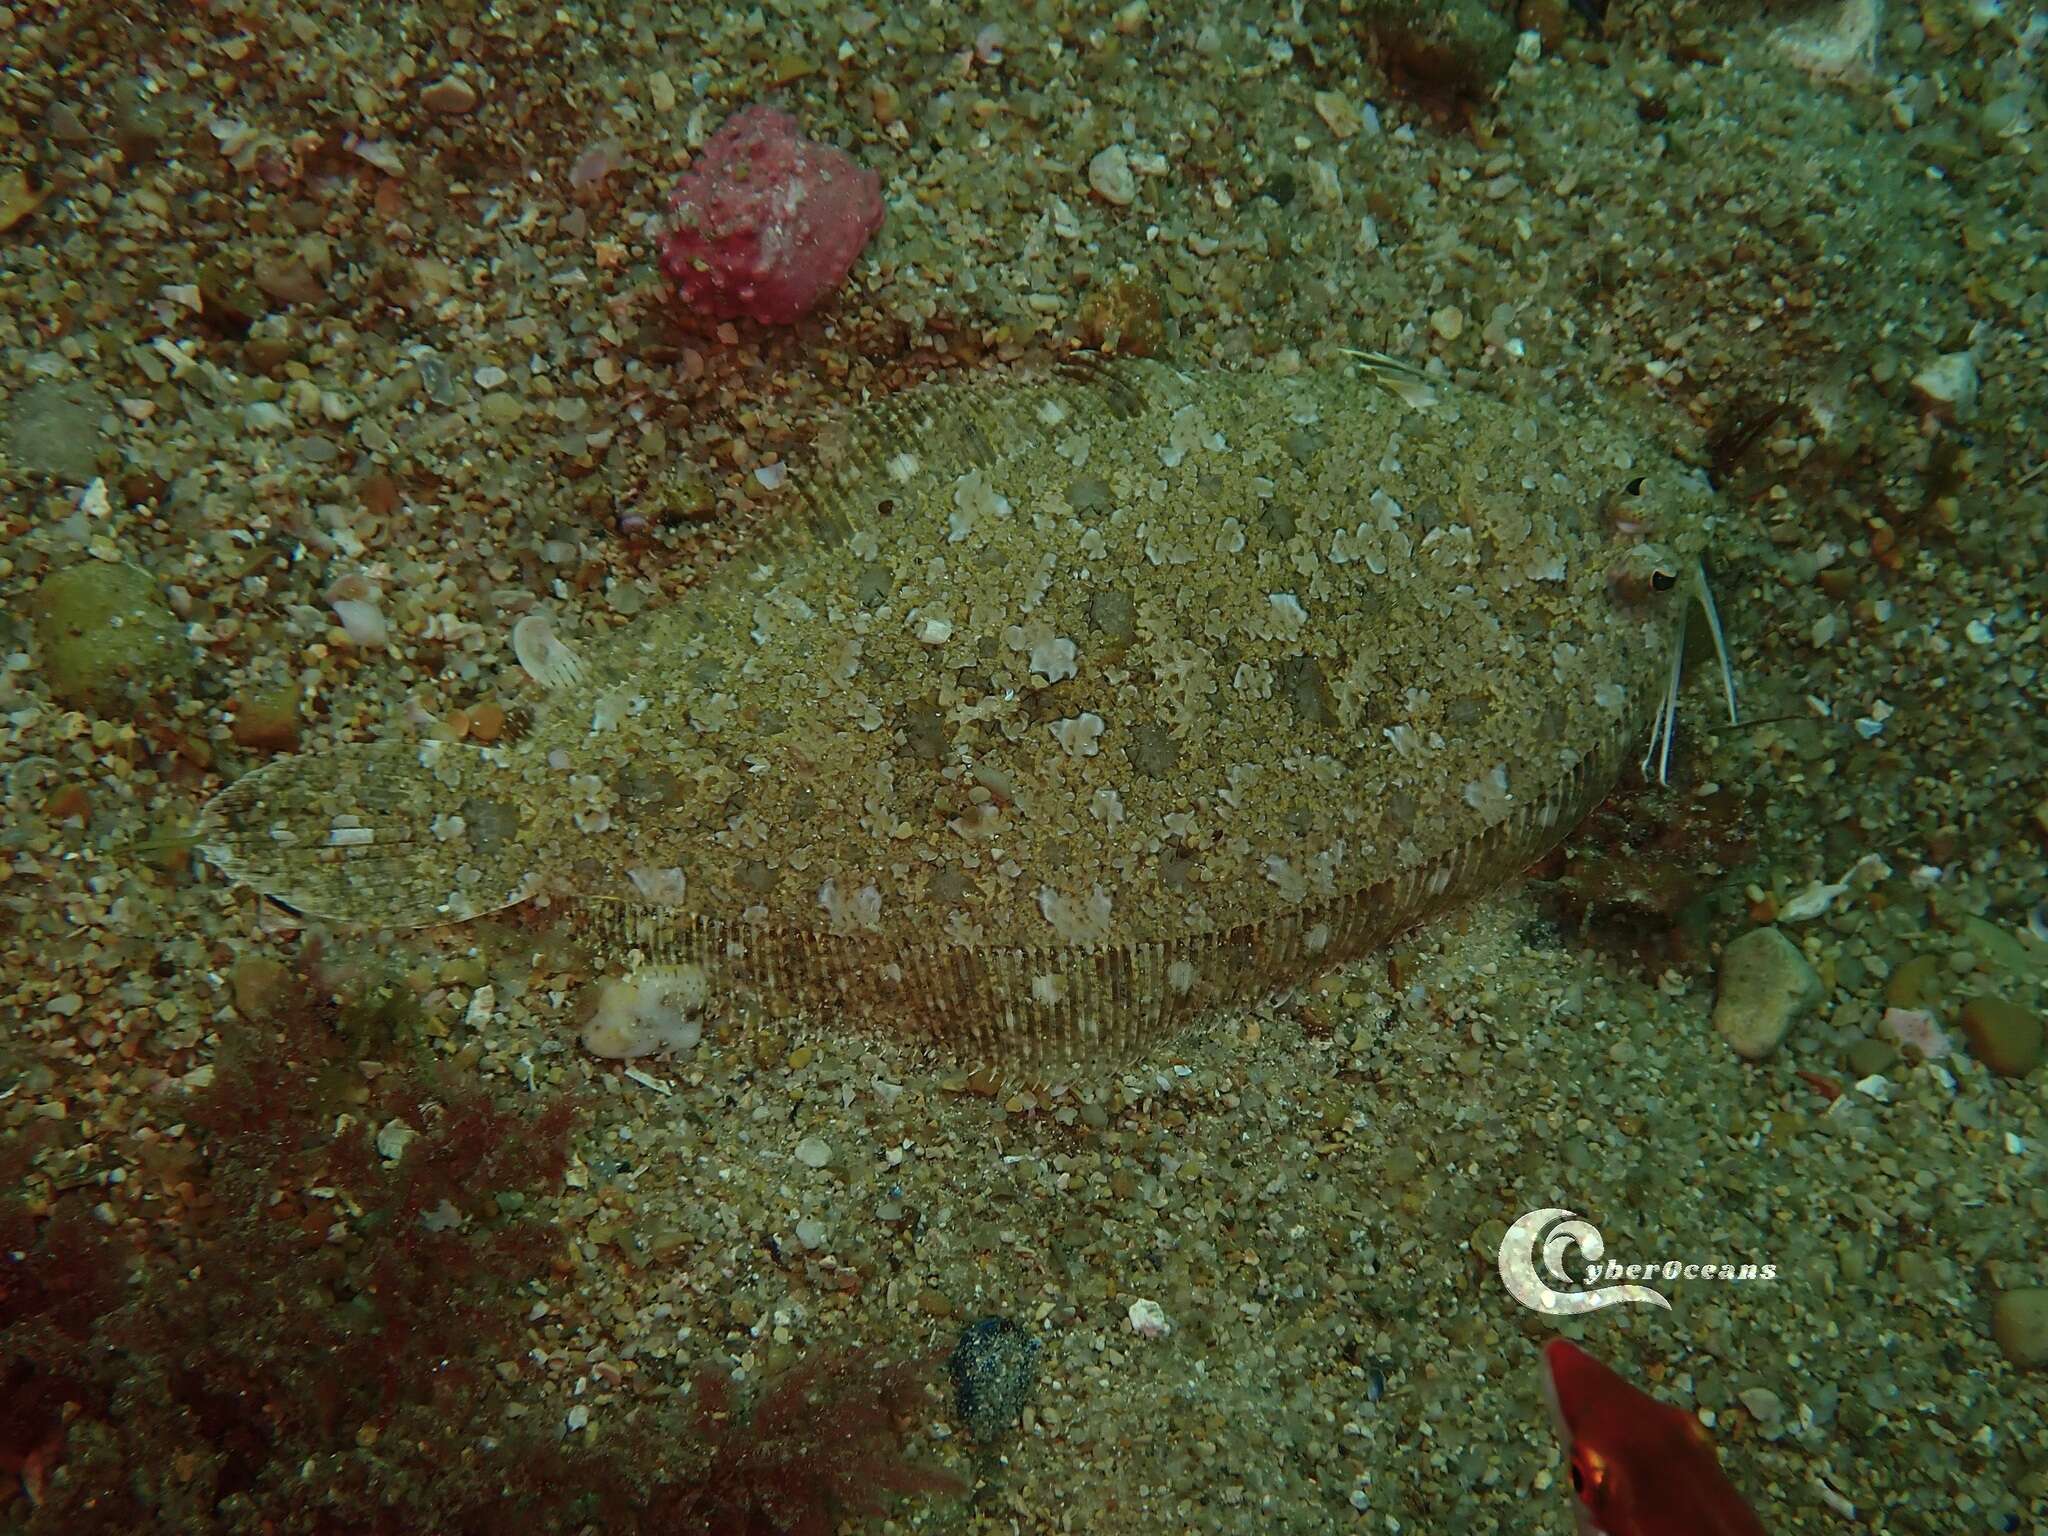 Image of Scaldfish